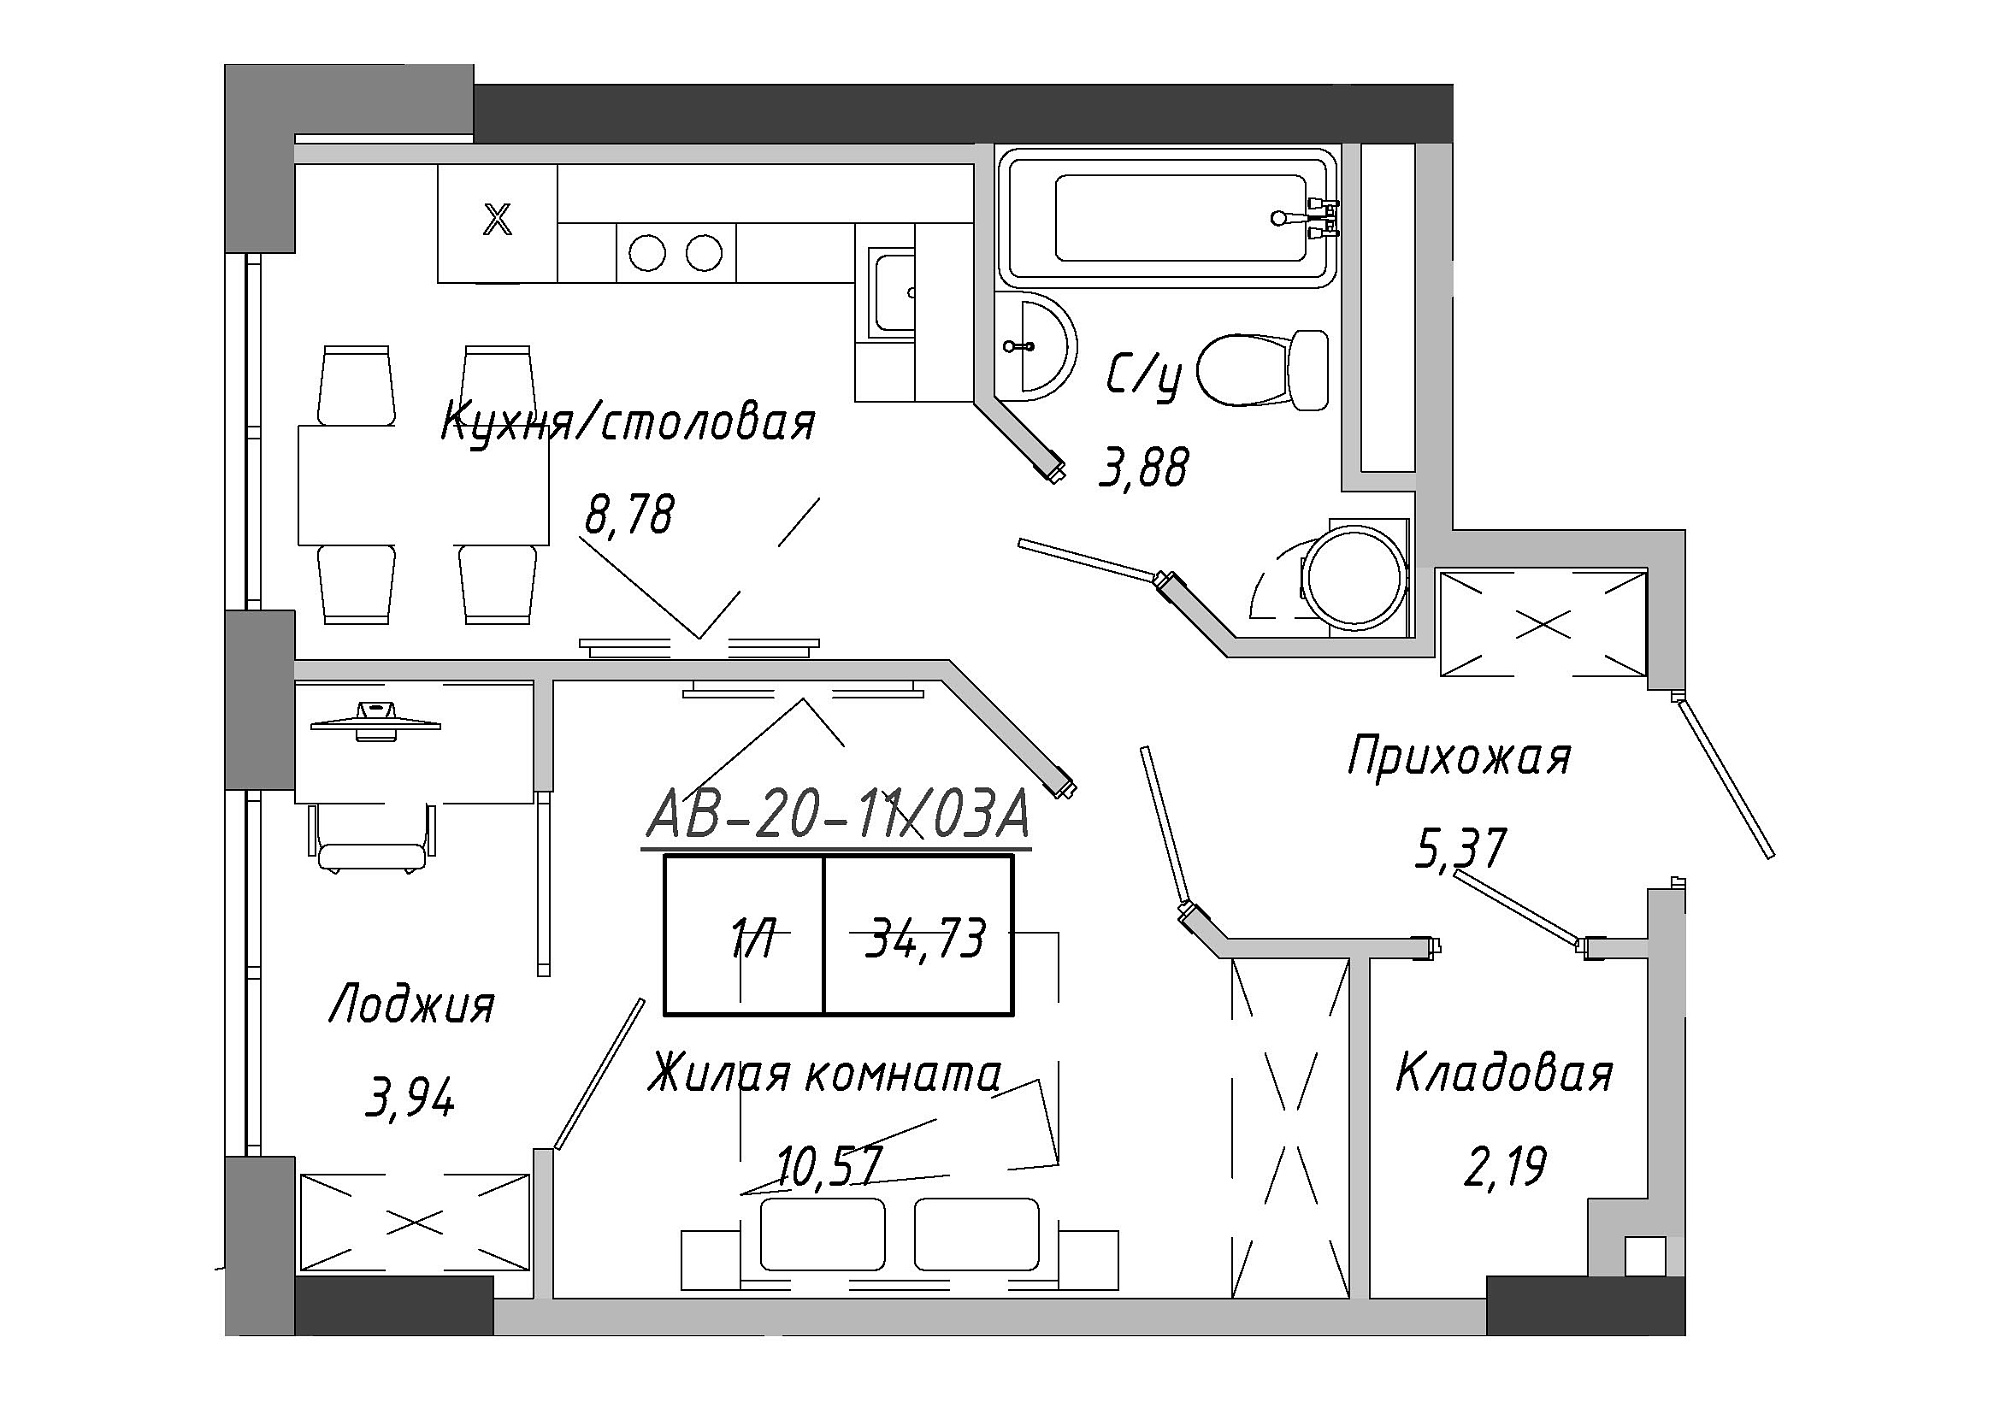 Планировка 1-к квартира площей 35.26м2, AB-20-11/0003а.